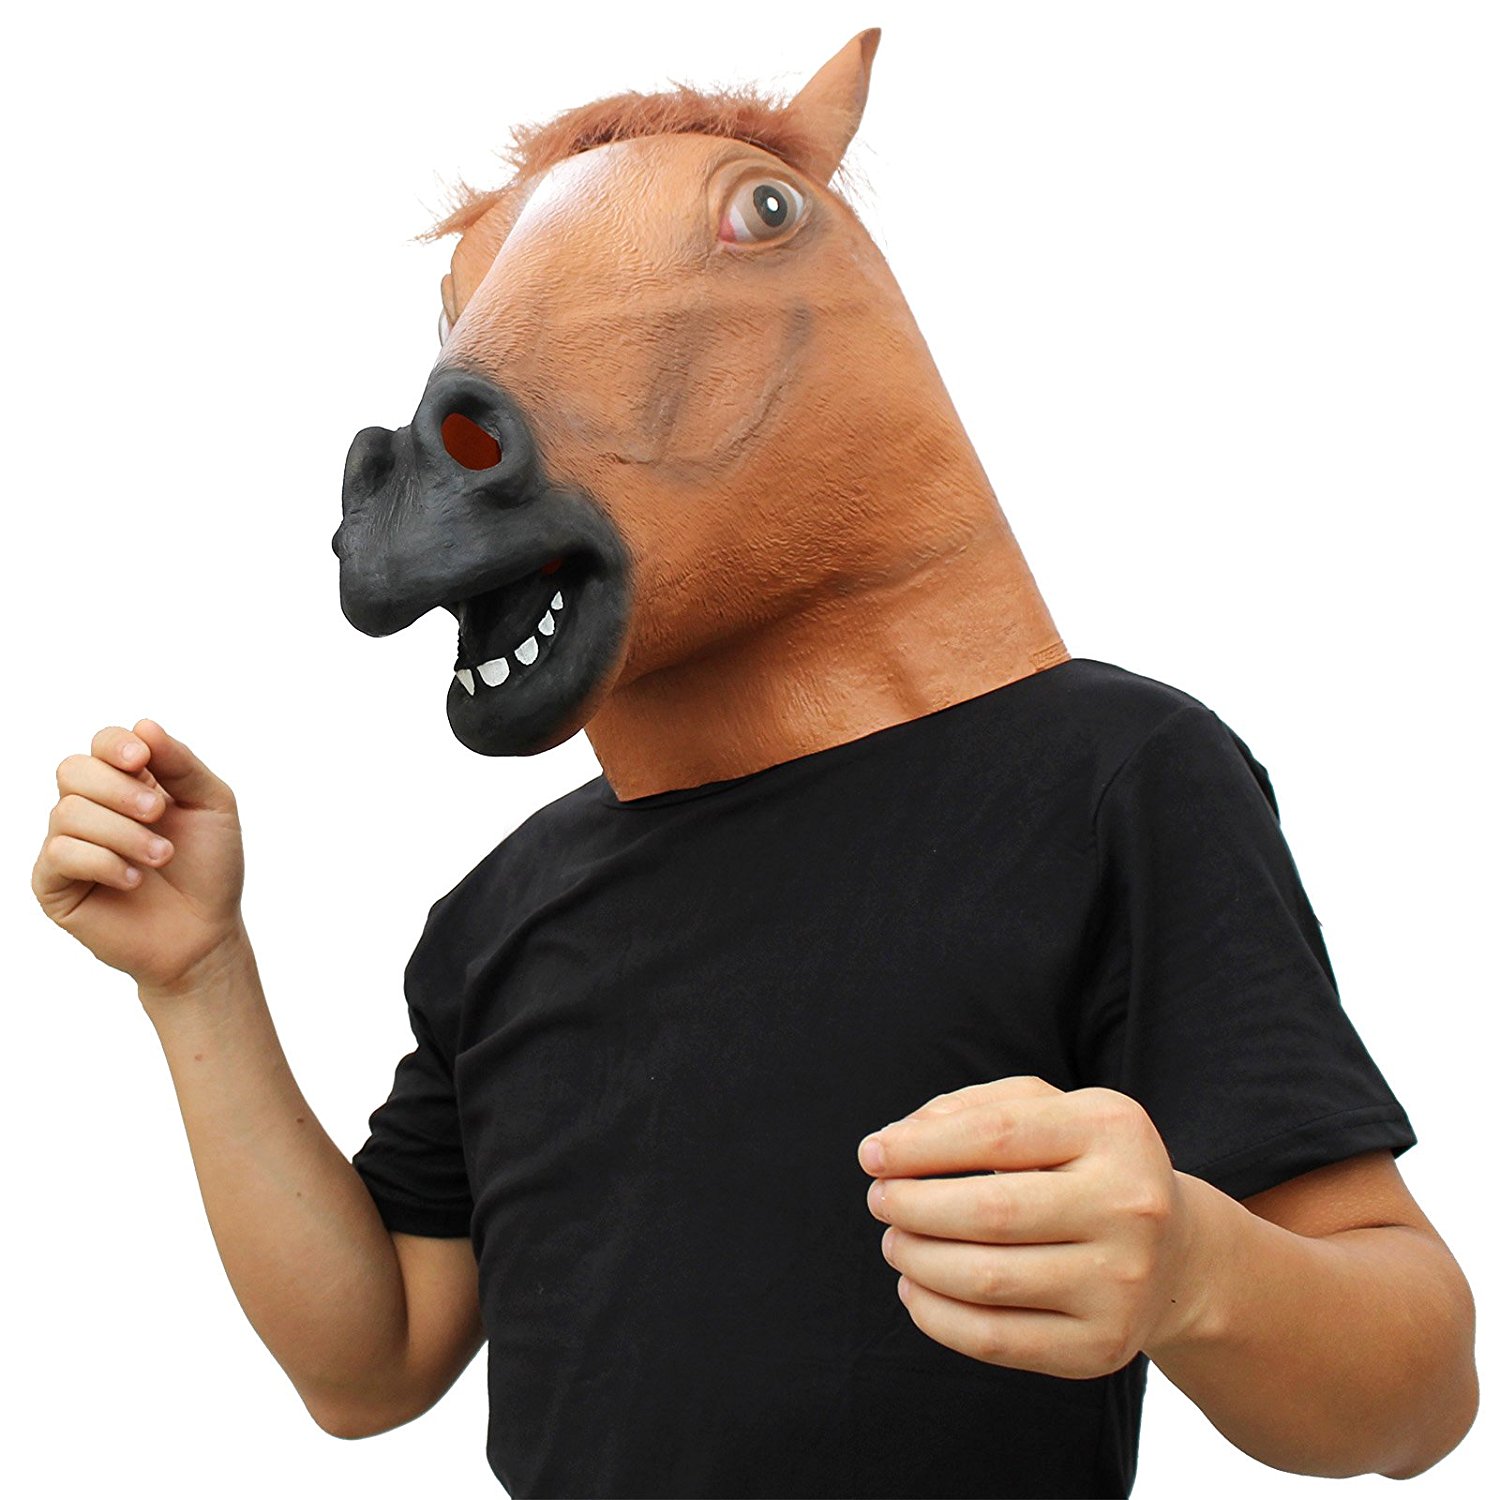 سر اسب به عنوان ماسک